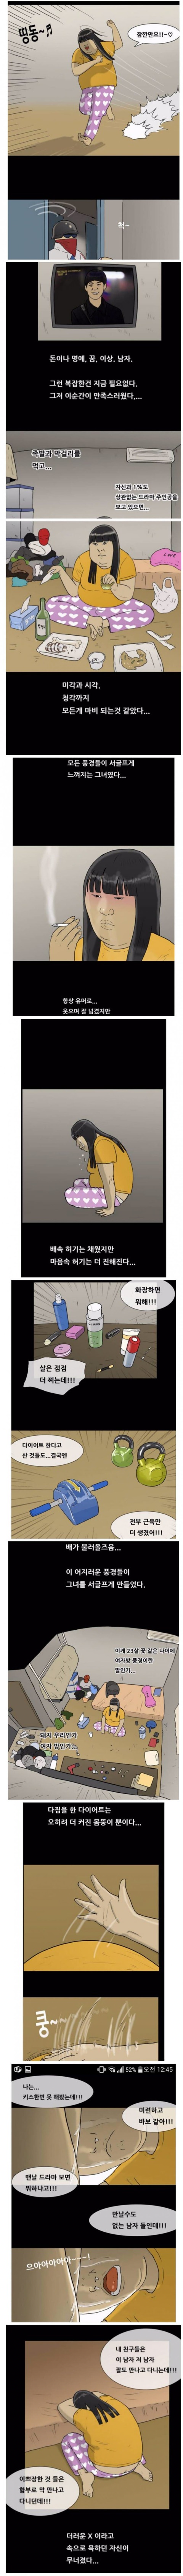 기안84 만화 속 뚱녀 짤의 진실 ㄷㄷㄷ ..jpg